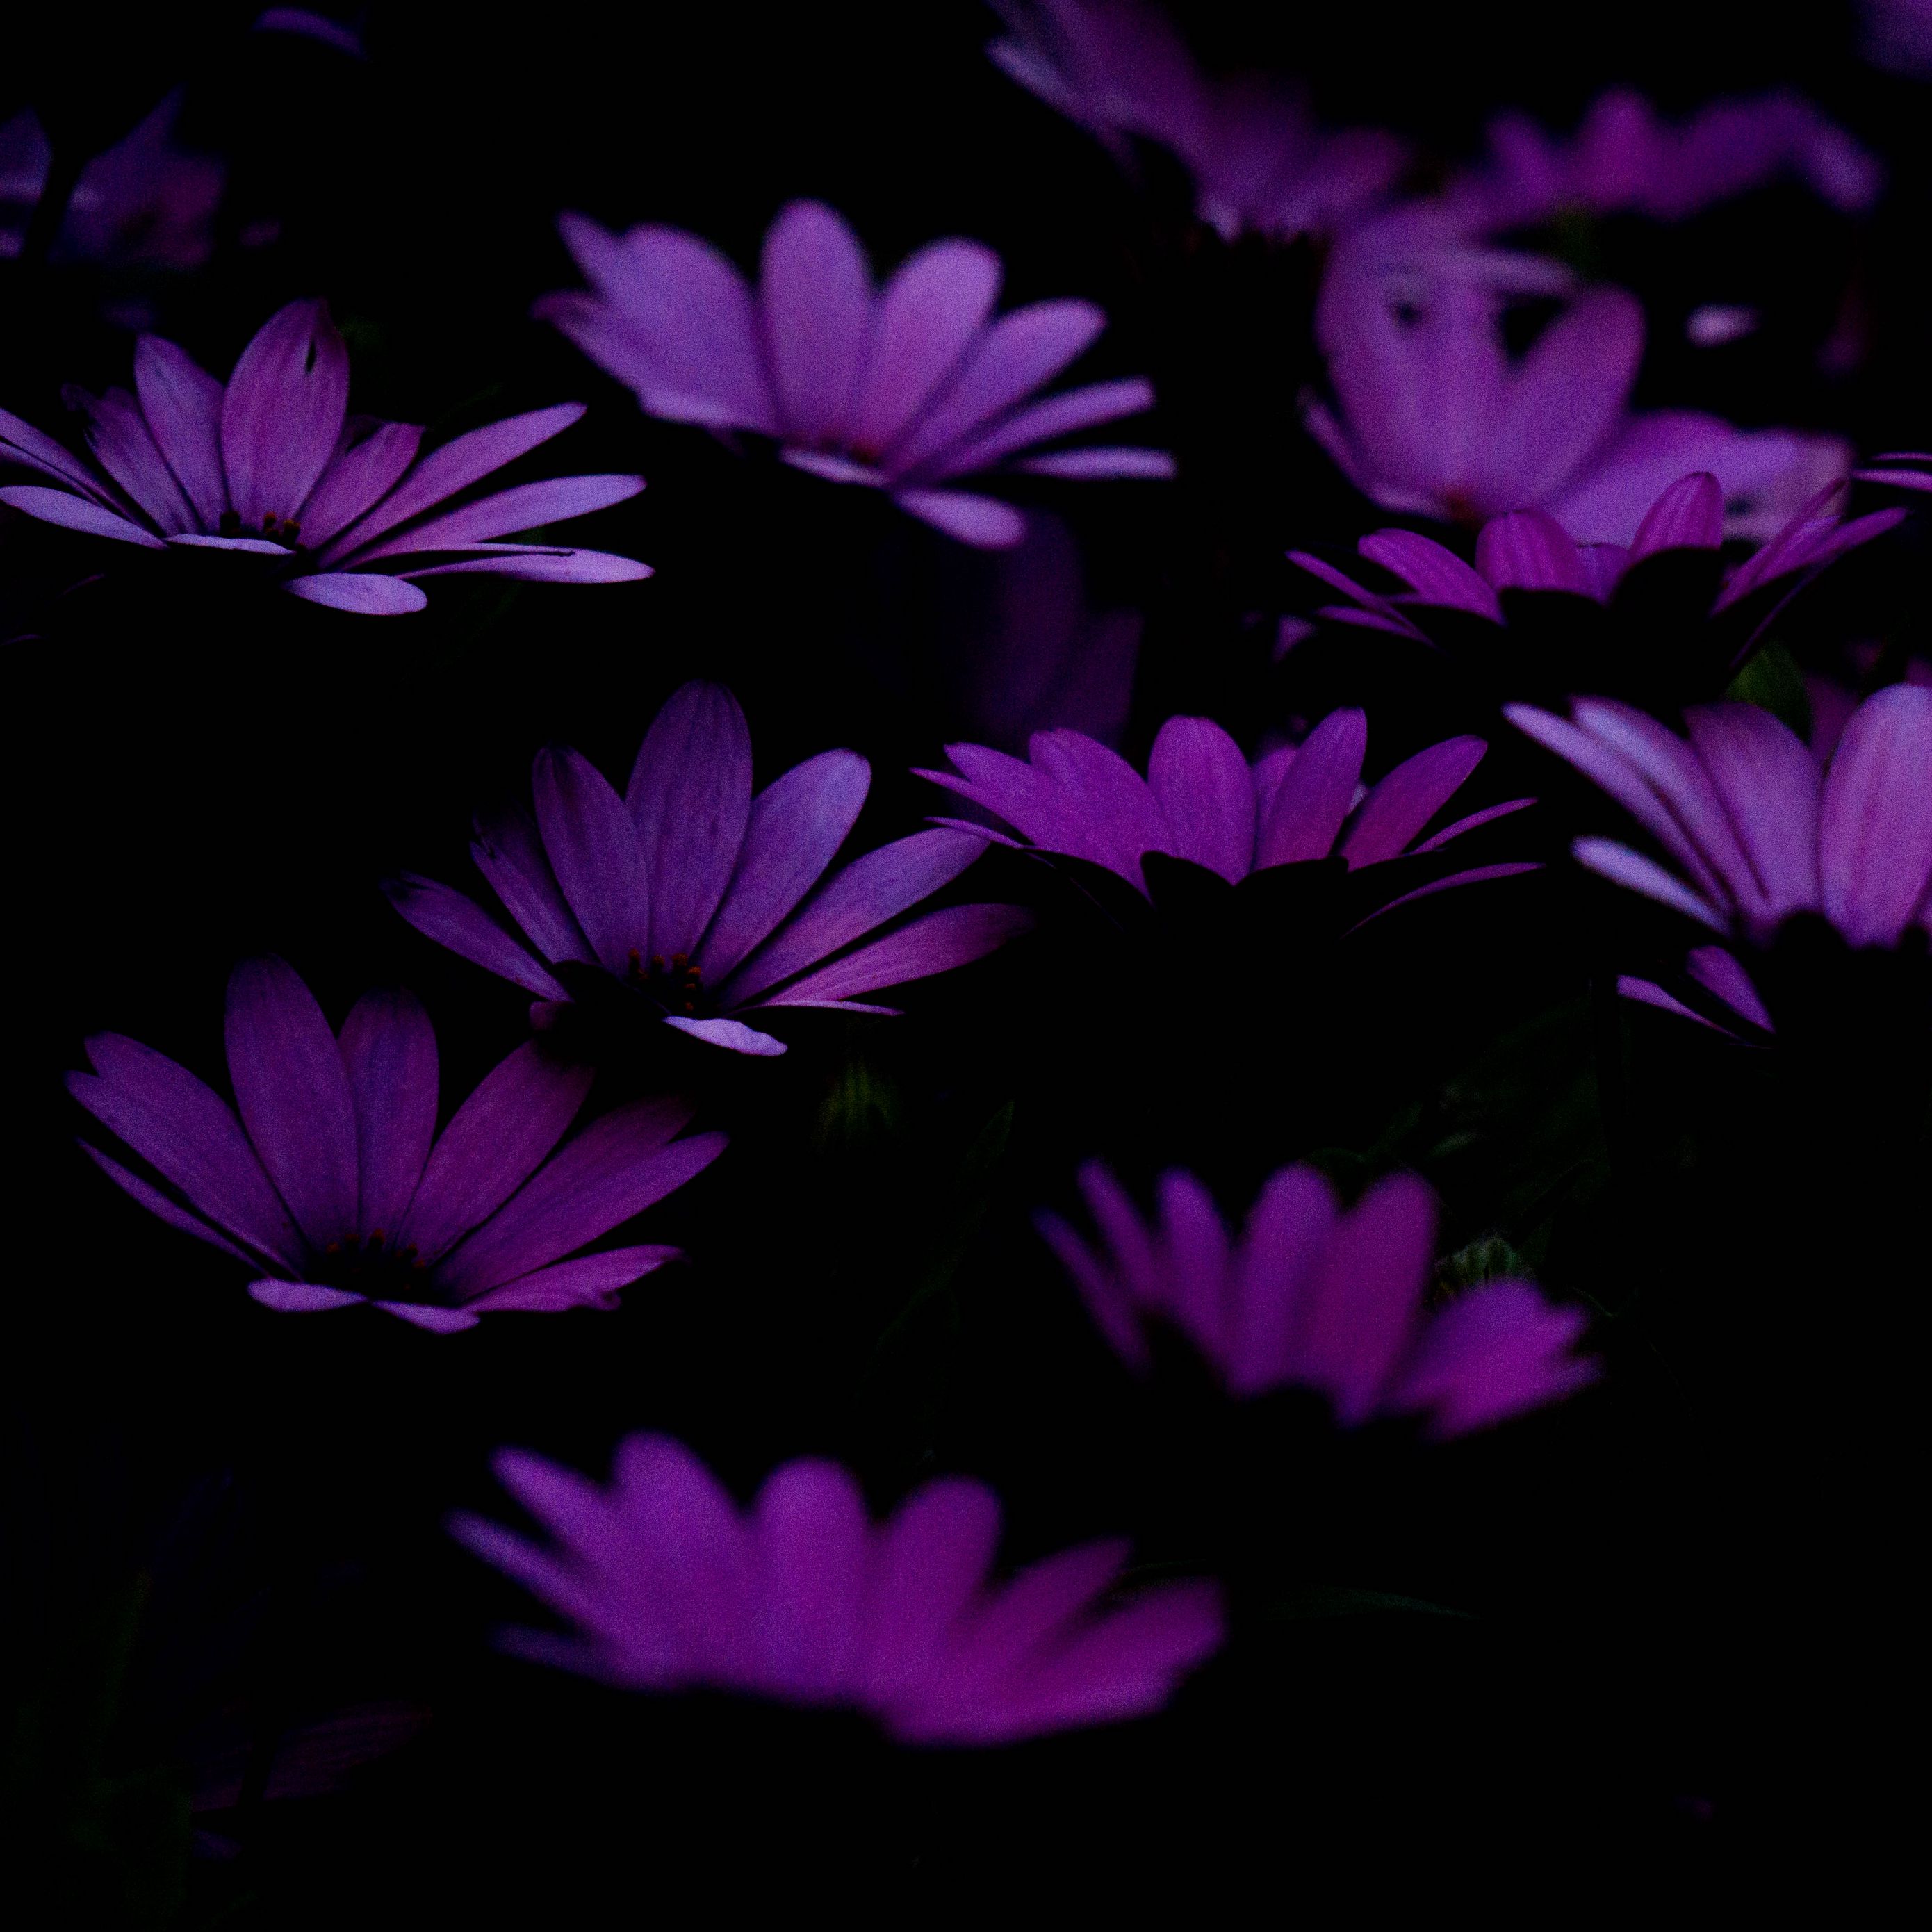 Hình nền hoa màu tím đậm cho iPad – Bạn thích sự sang trọng và đầy nữ tính? Hình nền hoa màu tím đậm này sẽ là gợi ý tuyệt vời cho bạn. Với các bông hoa tím đậm nổi bật trên nền đen, tạo nên một vẻ đẹp đầy ấn tượng, khiến bạn sẽ thích thú khi sử dụng iPad của mình.